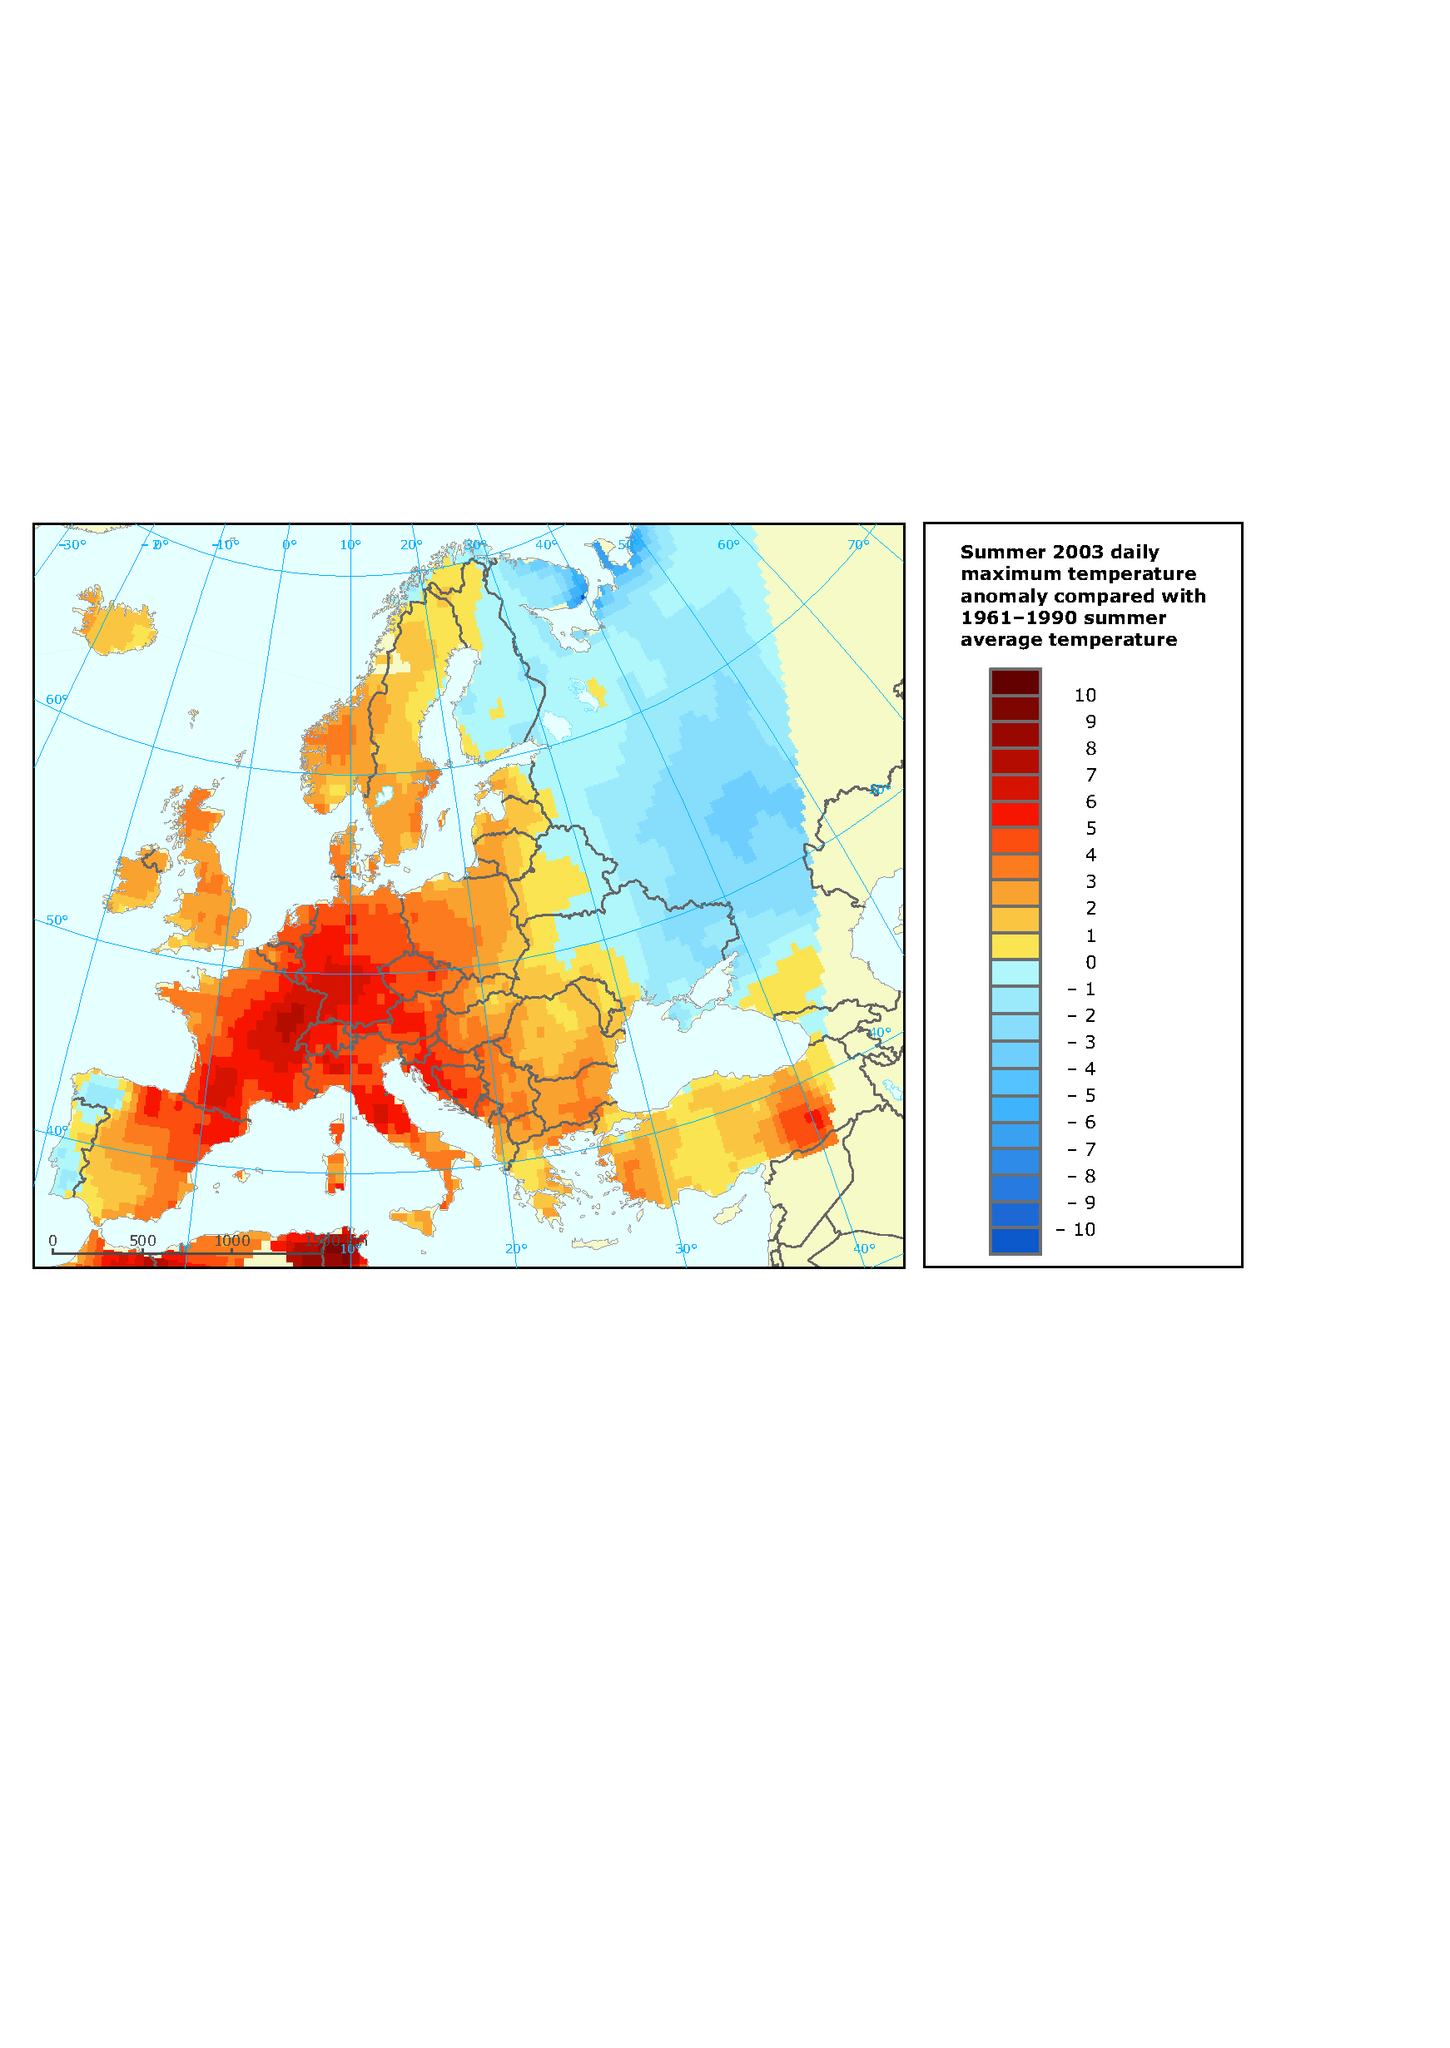 Summer 2003 (June-August) daily maximum temperature anomaly